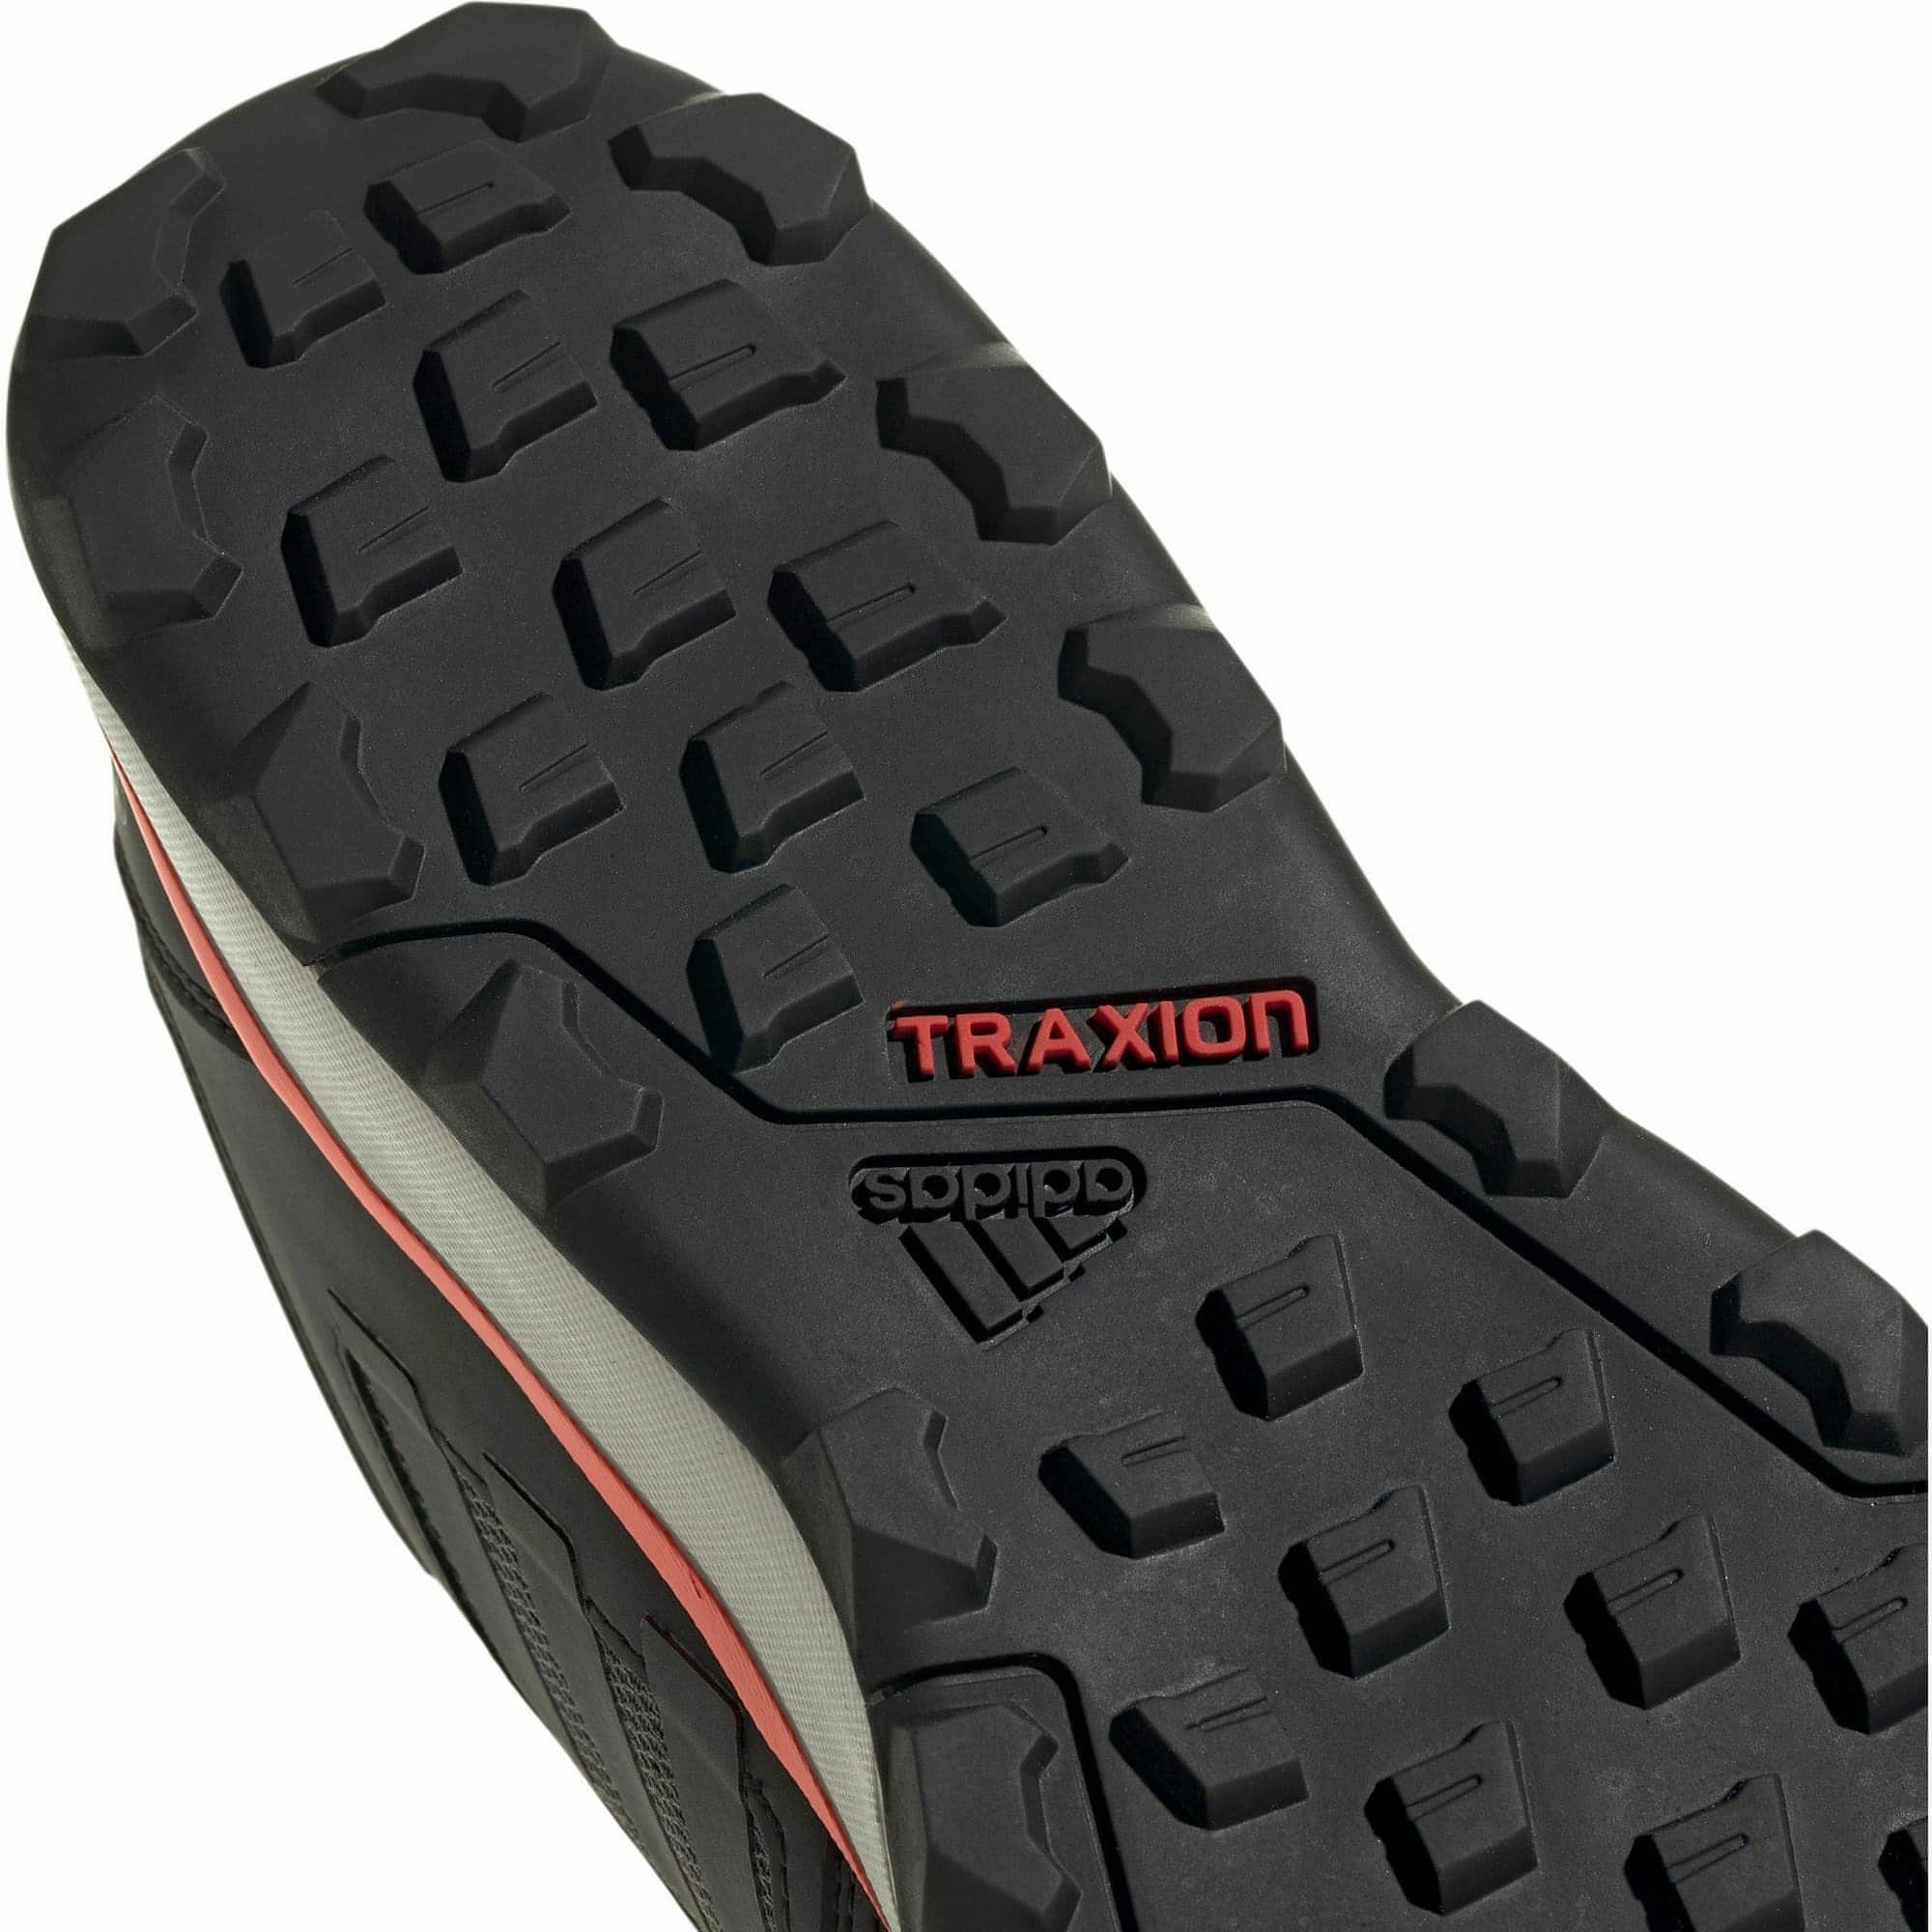 adidas Terrex Tracerocker 2 Mens Trail Running Shoes - Black